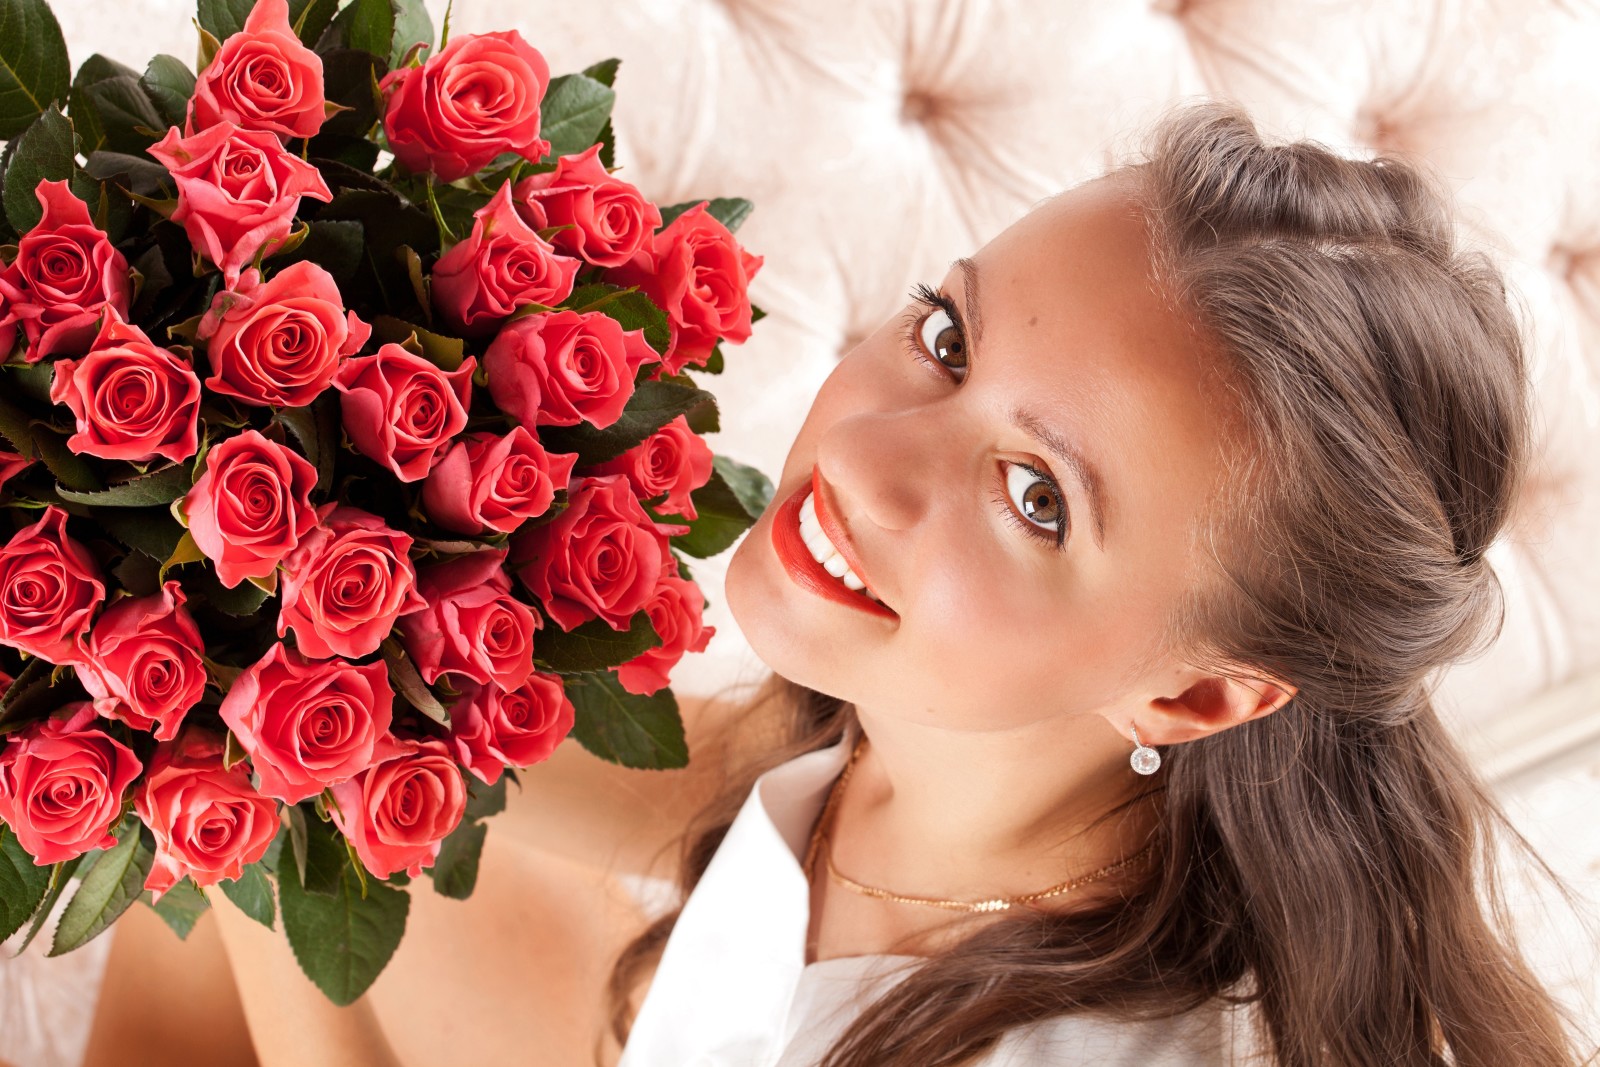 nhìn, con gái, nụ cười, hoa hồng, những bông hoa, trang điểm